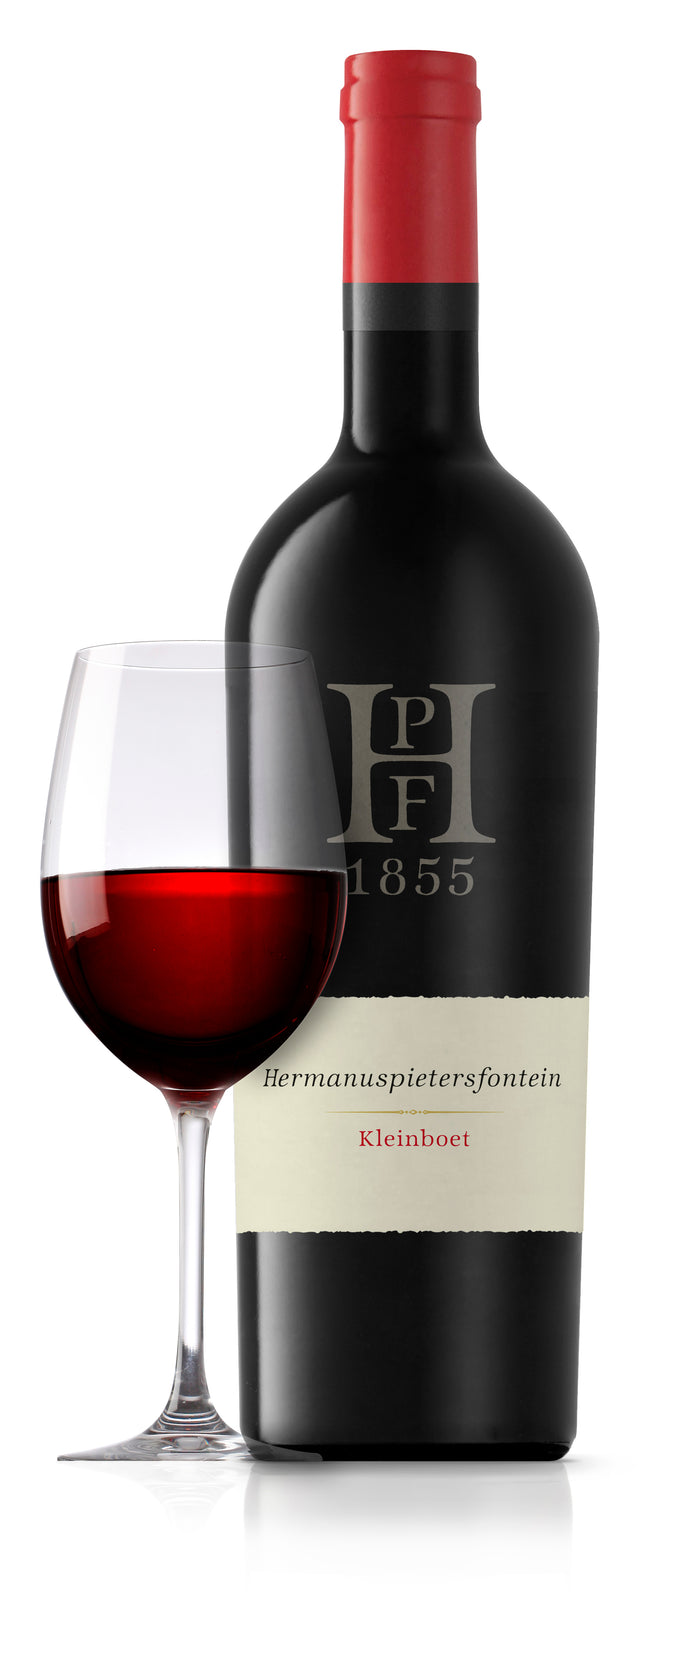 Kleinboet (Bordeaux-blend) - Hermanuspietersfontein Wines 